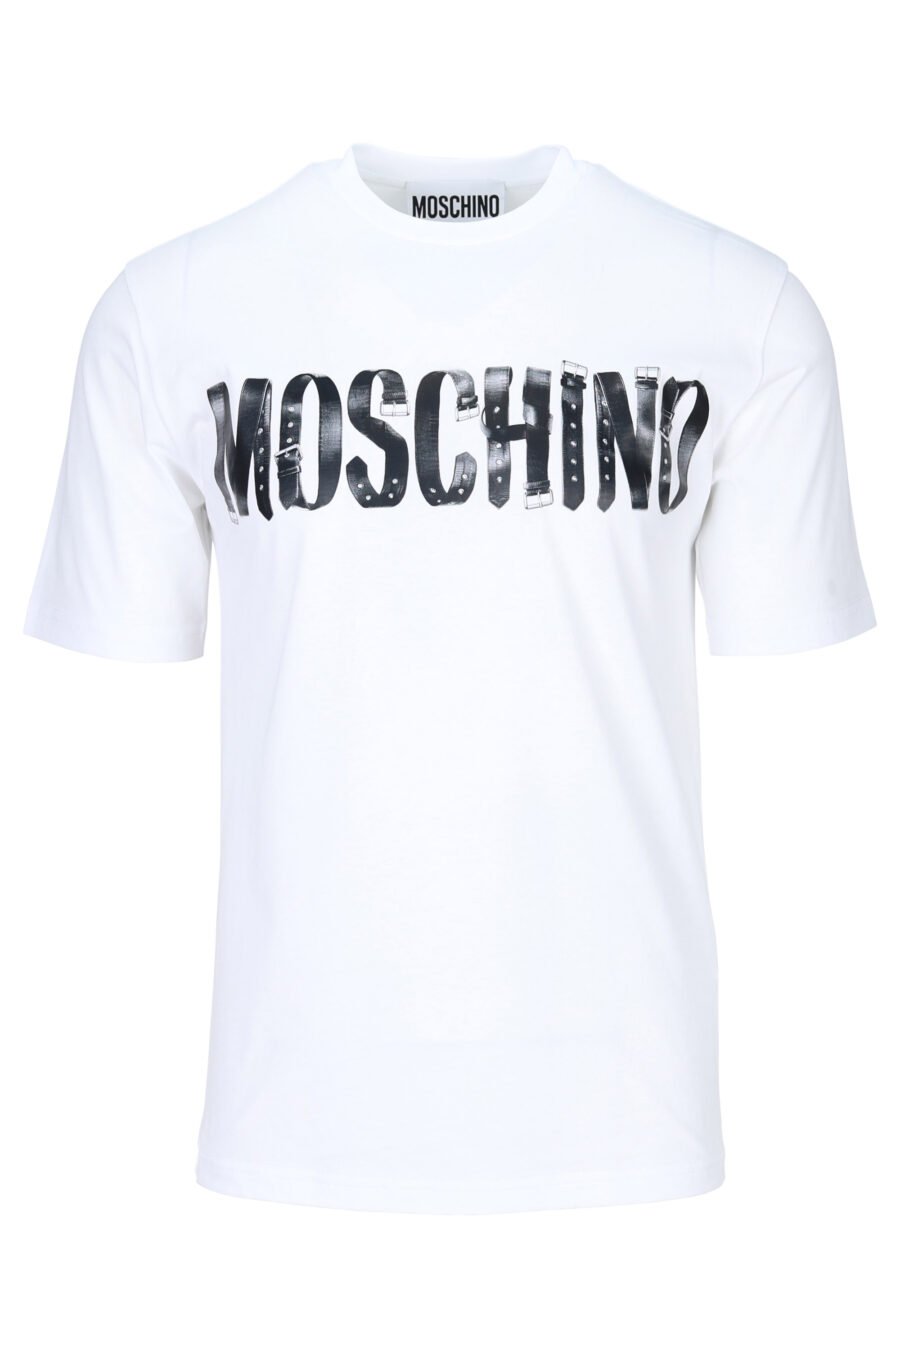 T-shirt branca com maxilogue preto usado - 889316937954